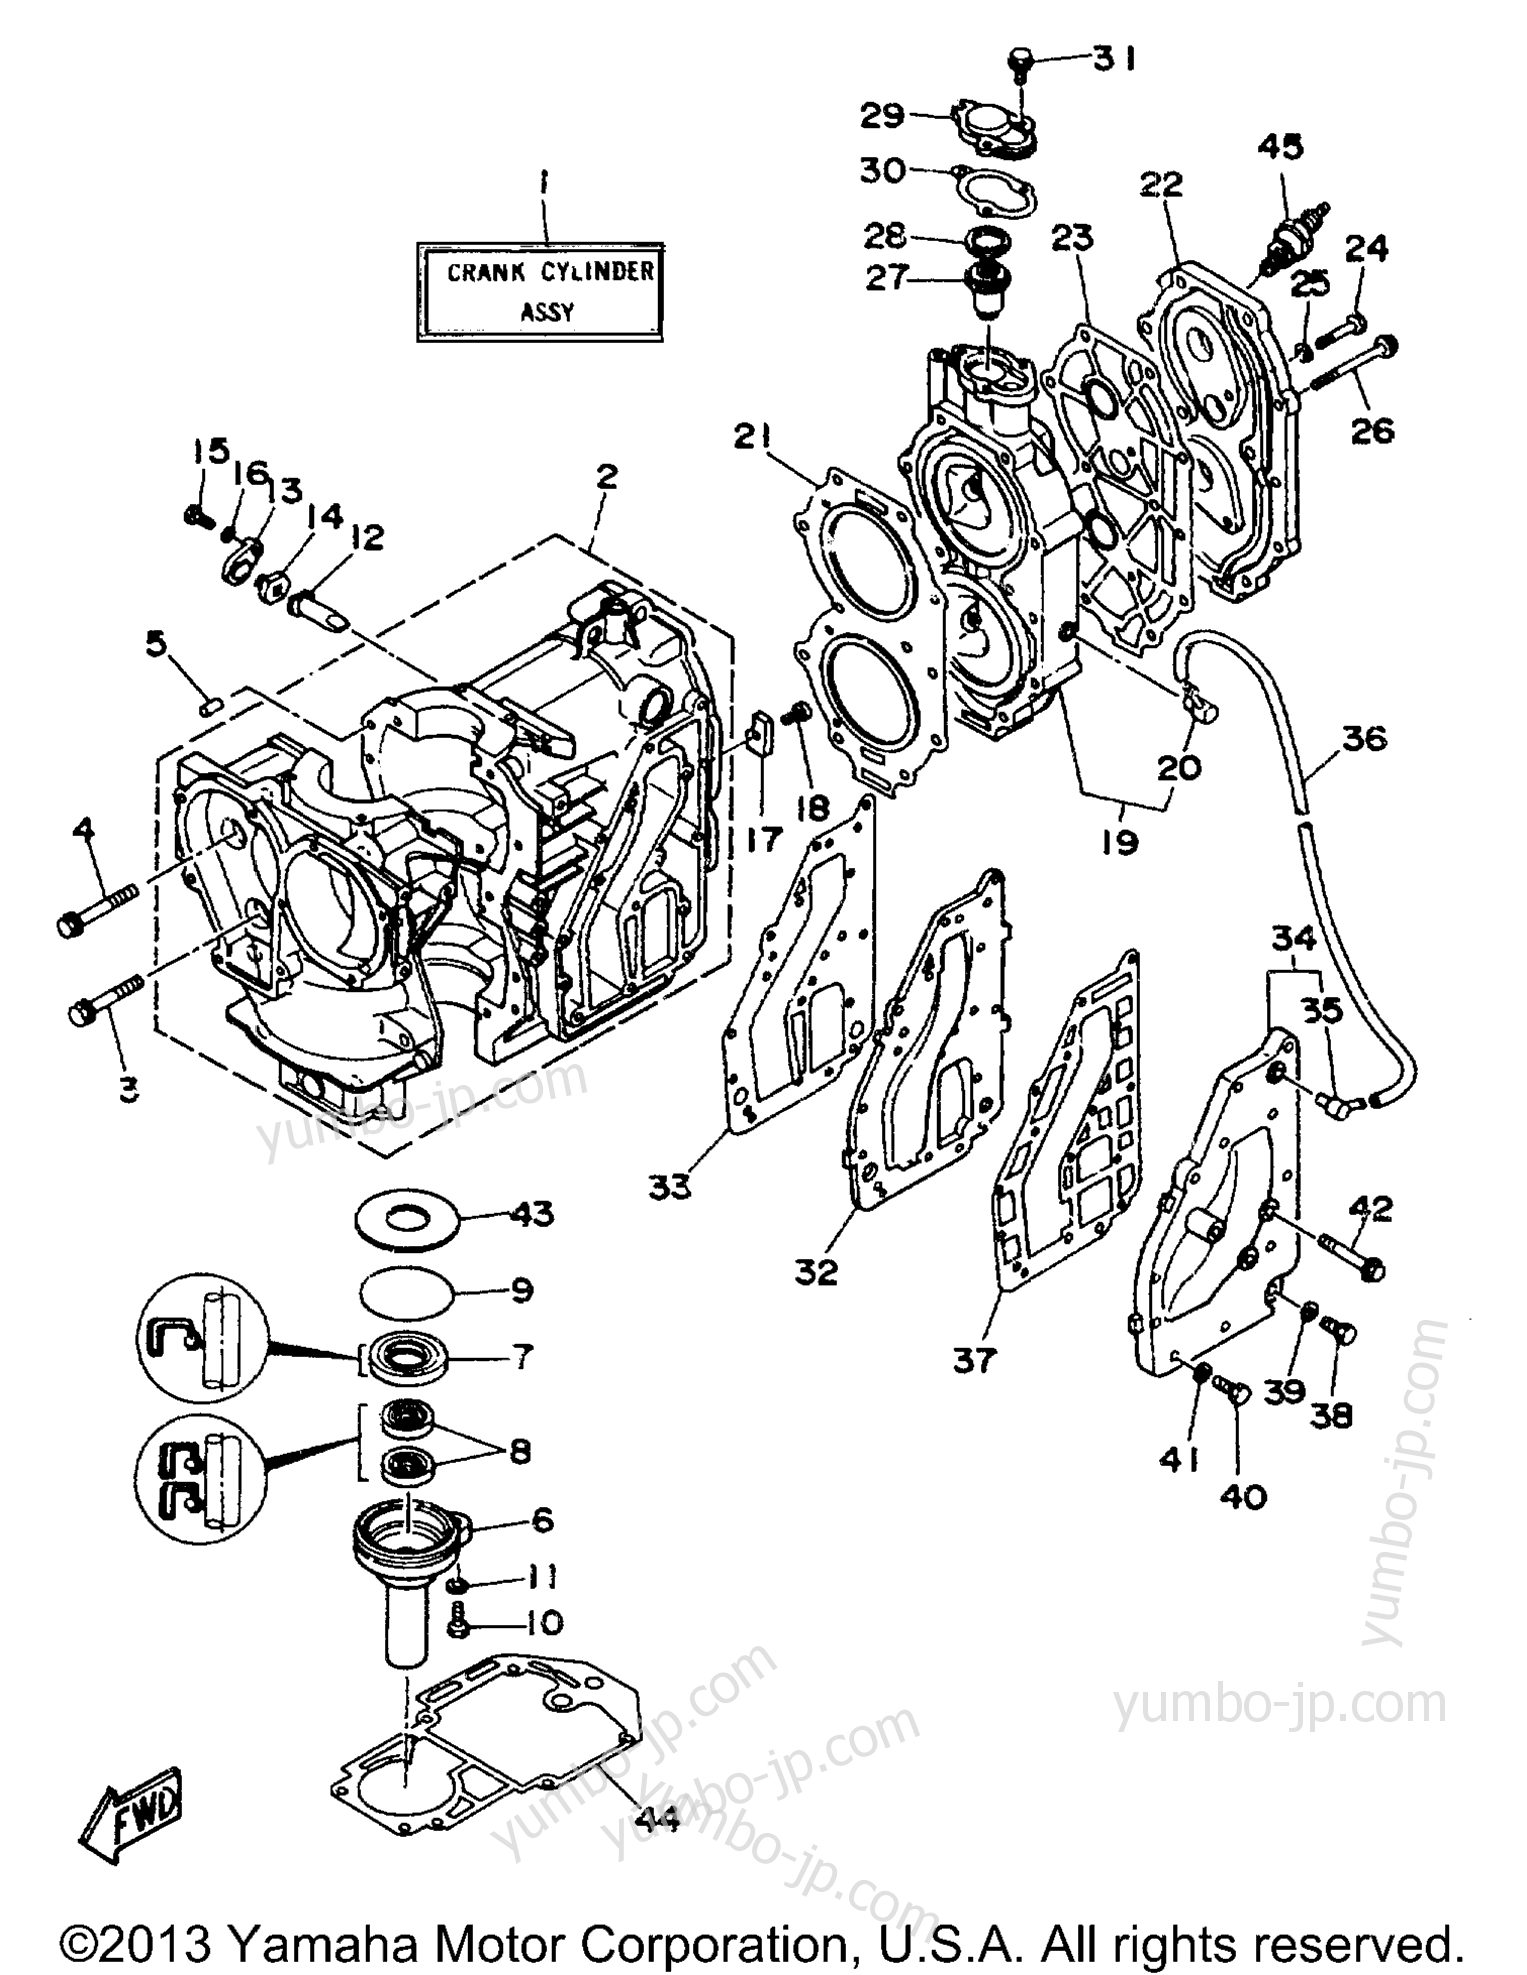 Cylinder Crankcase для лодочных моторов YAMAHA C30MLHS 1994 г.